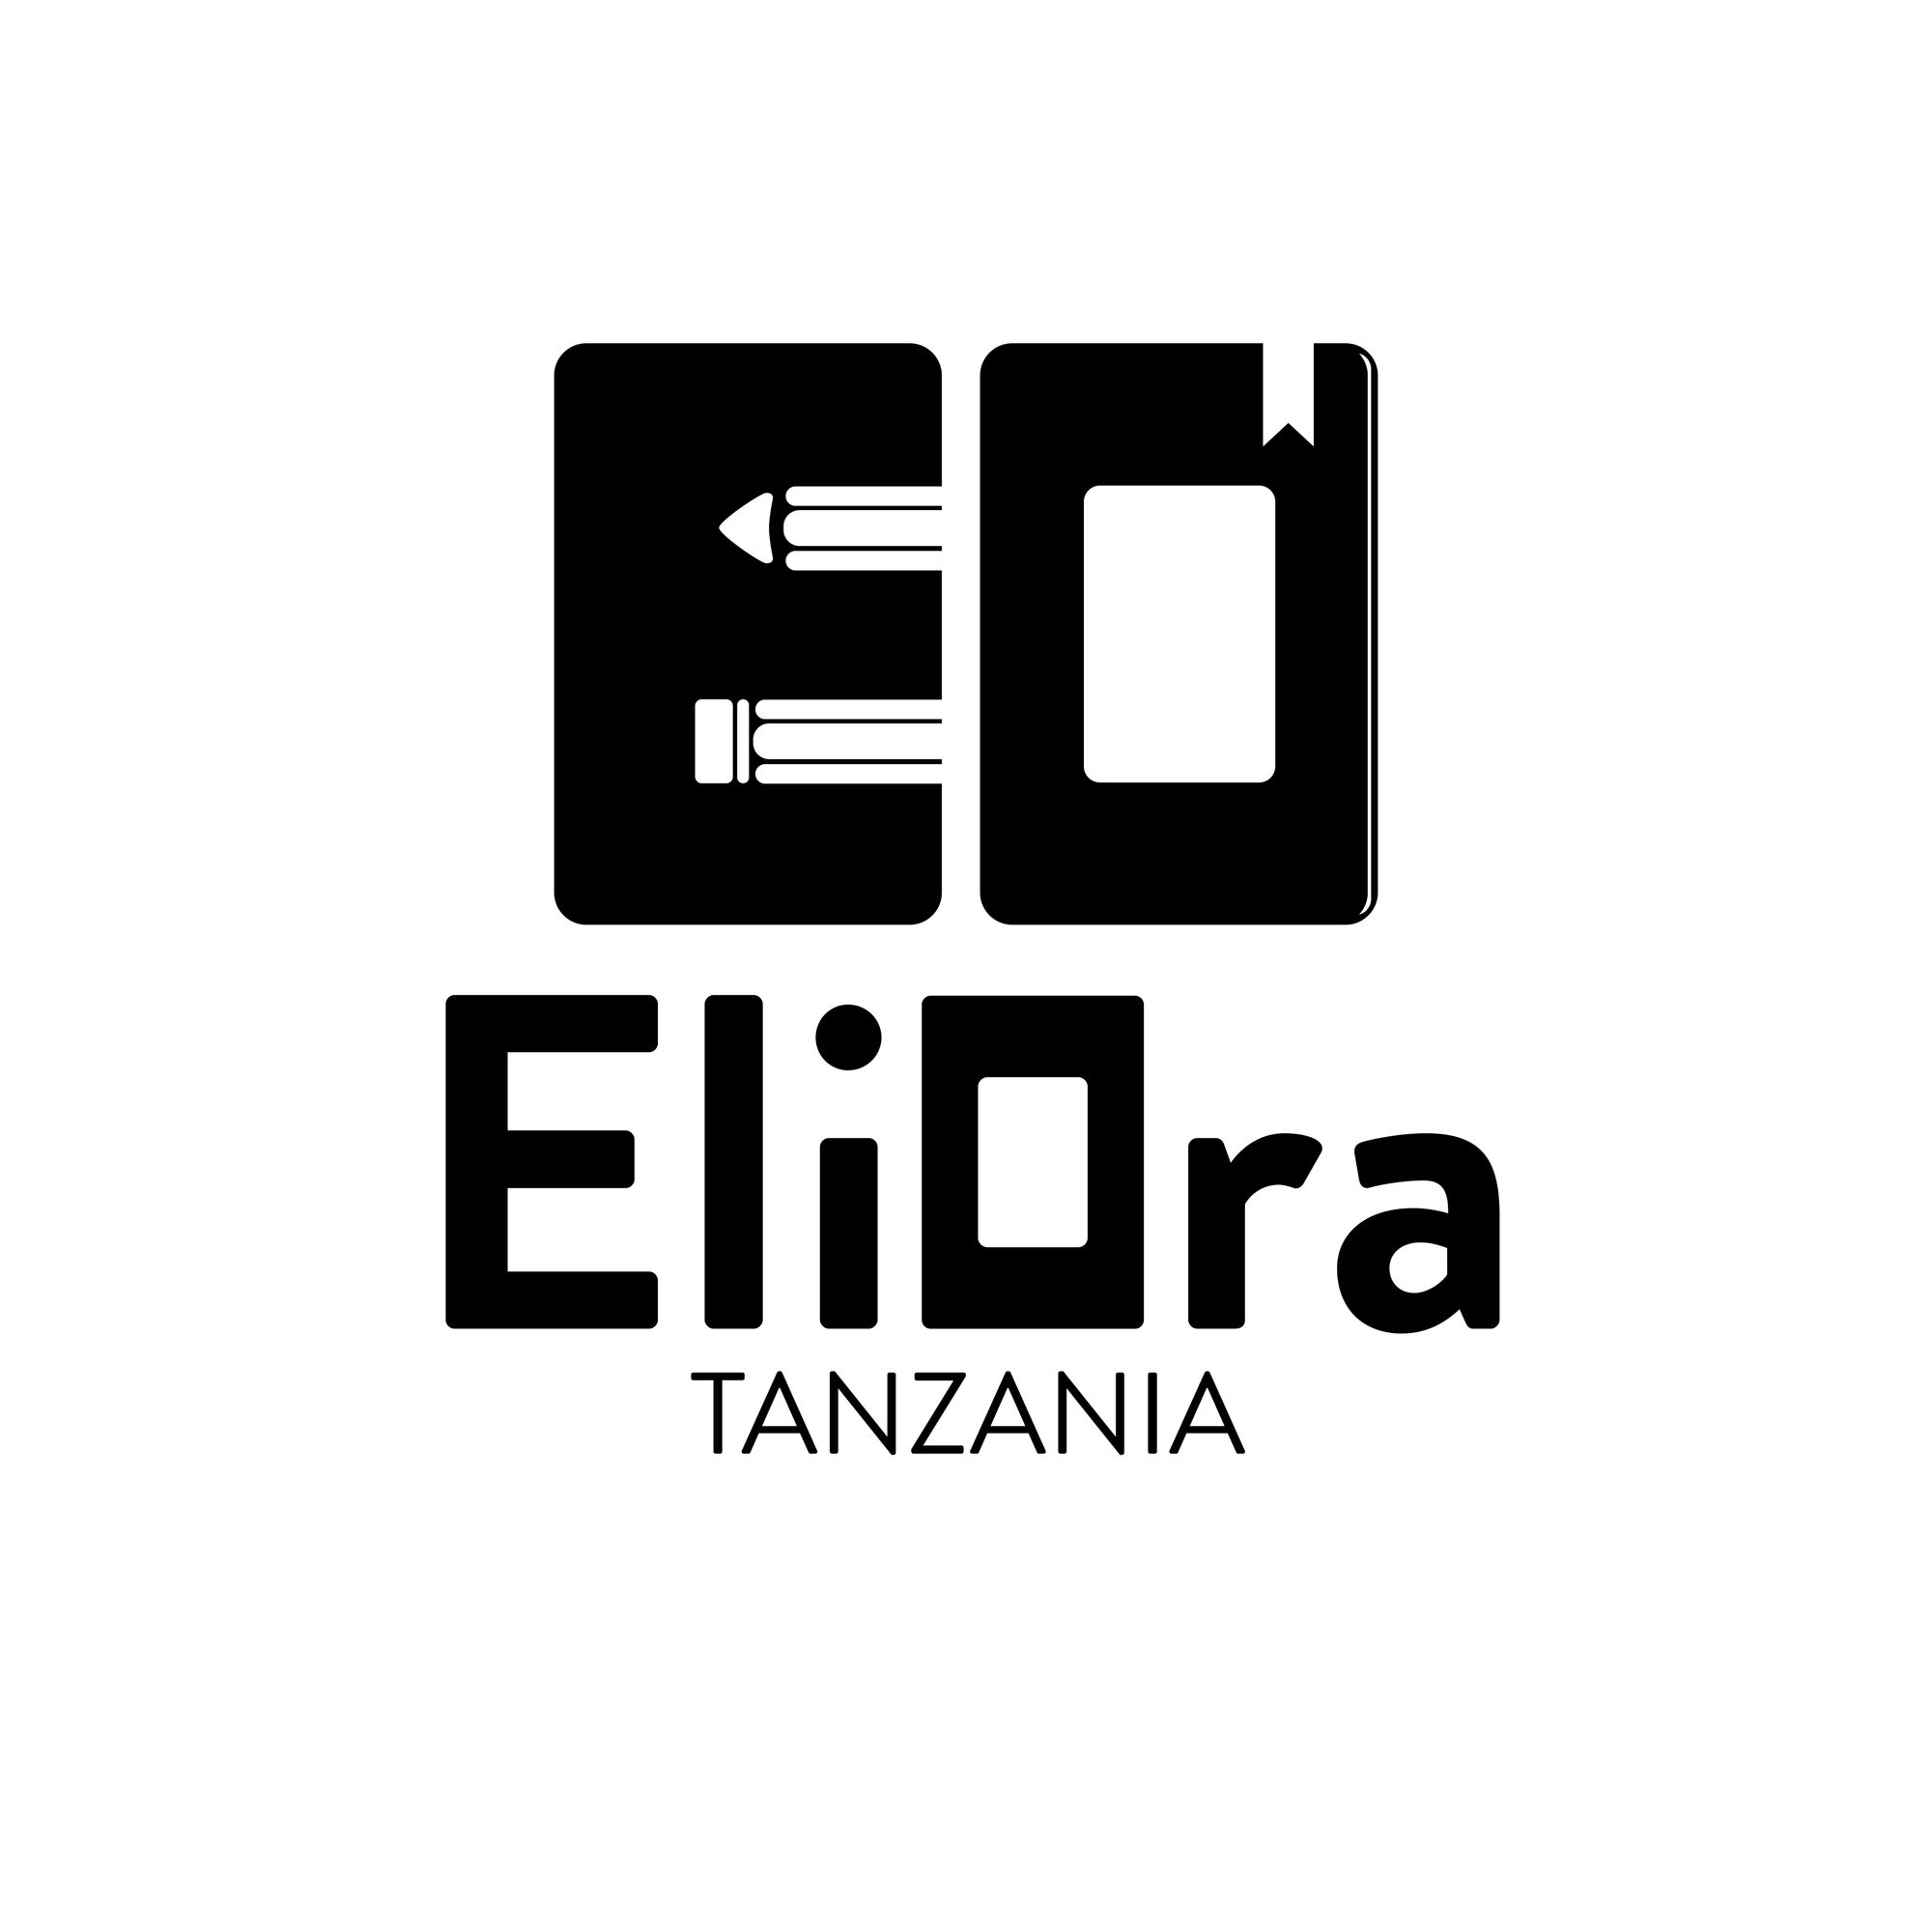 EliOra Tanzania